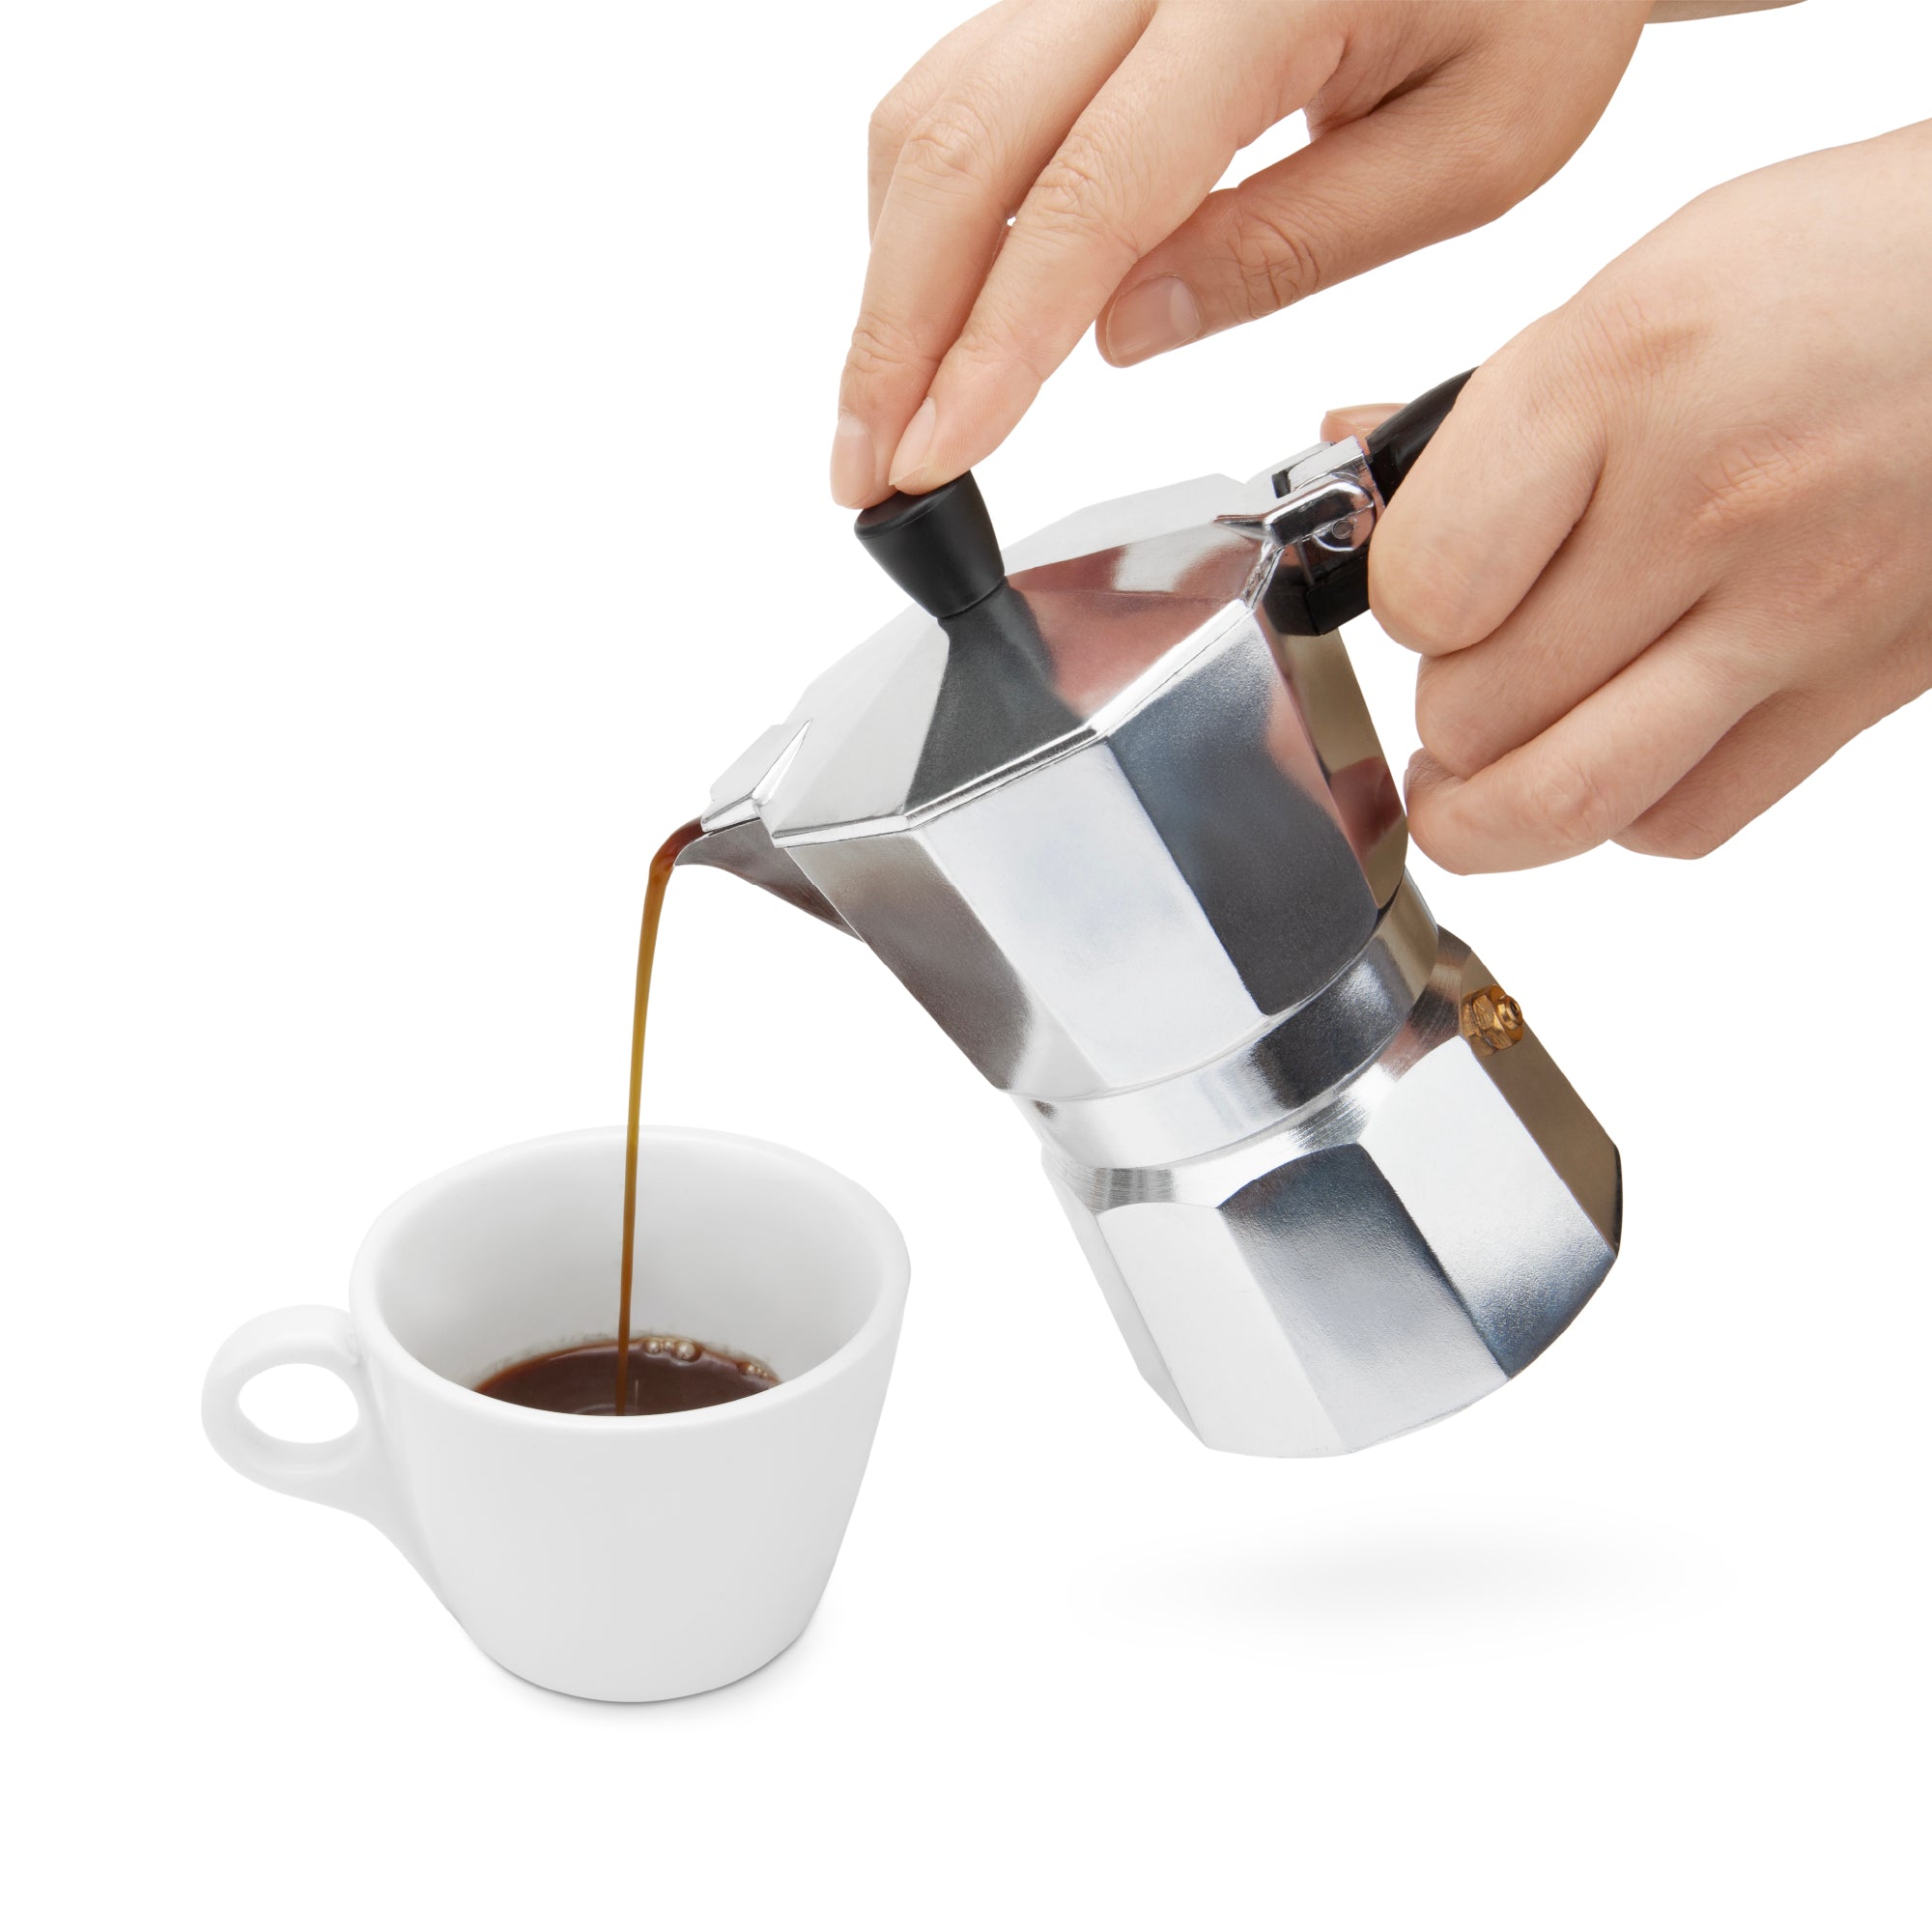 https://espresso-works.com/cdn/shop/products/espressoworks-three-cup-moka-pot-stovetop-espresso-maker-06_2000x.jpg?v=1604993426